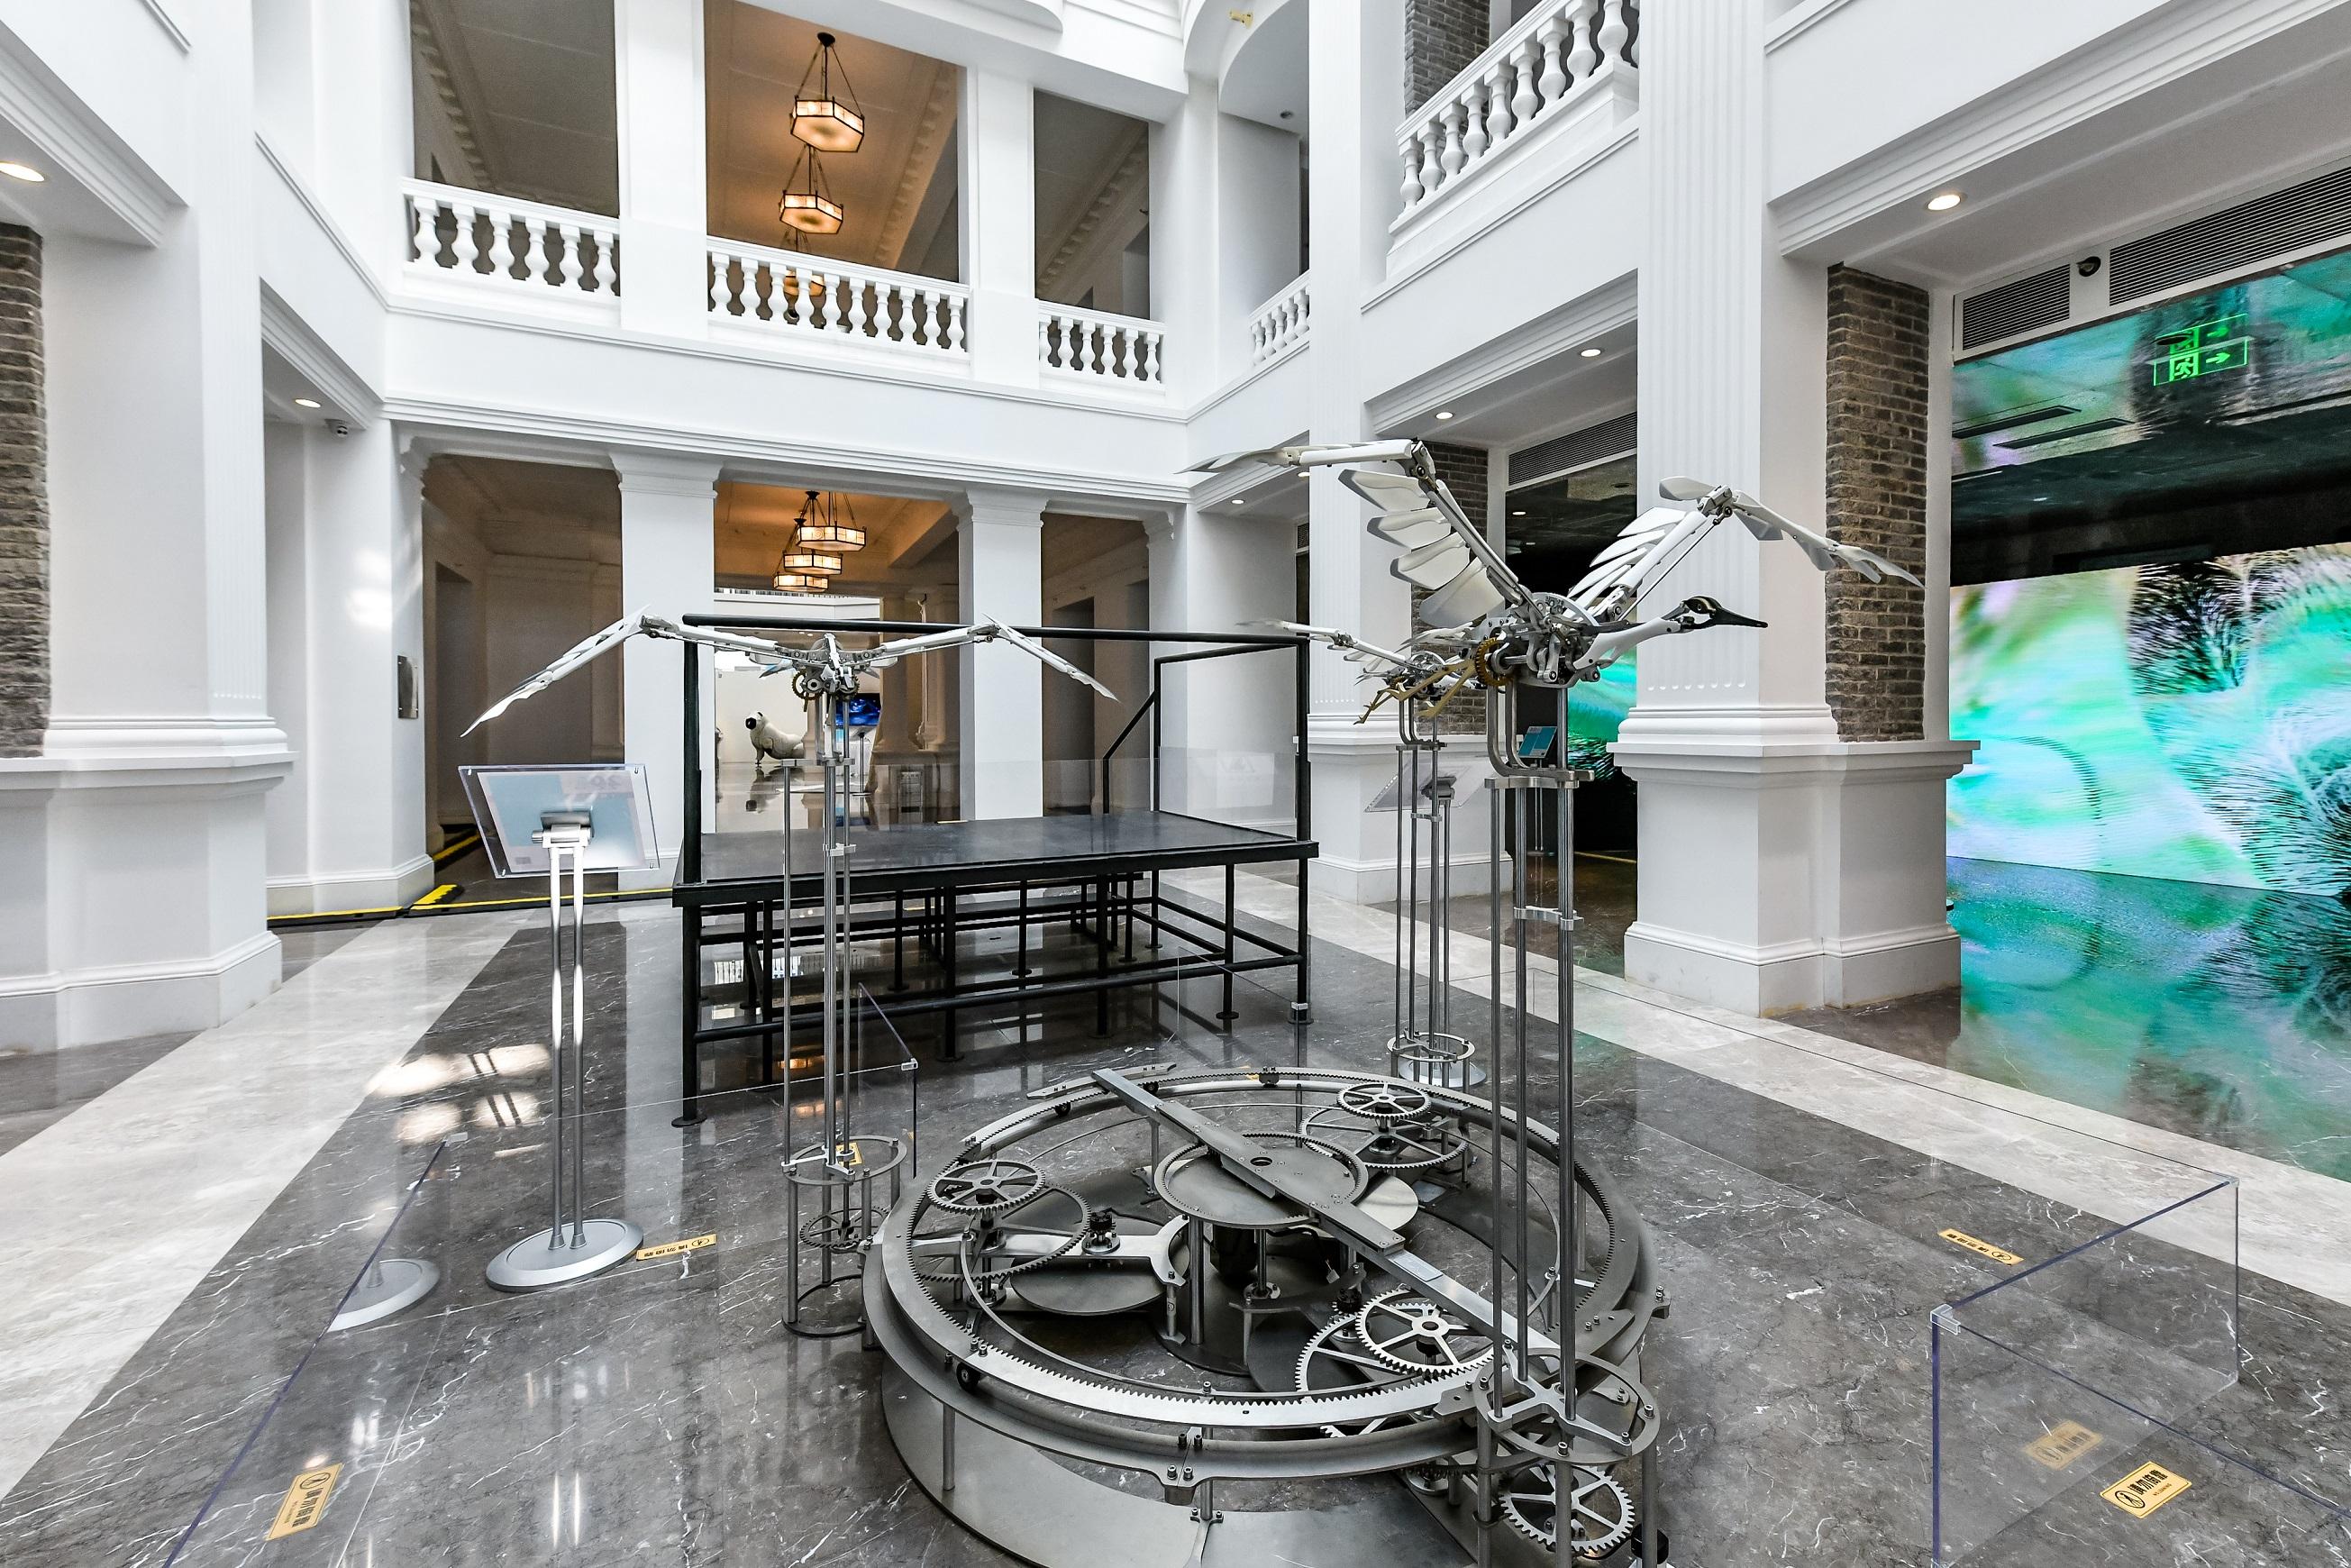 「2022港澳視覺藝術雙年展」現正於北京勸業場文化藝術中心舉行。圖示香港藝術家陳家俊的動態裝置作品《候鳥》，是大型機械鳥裝置，靈感來自大自然的生態。